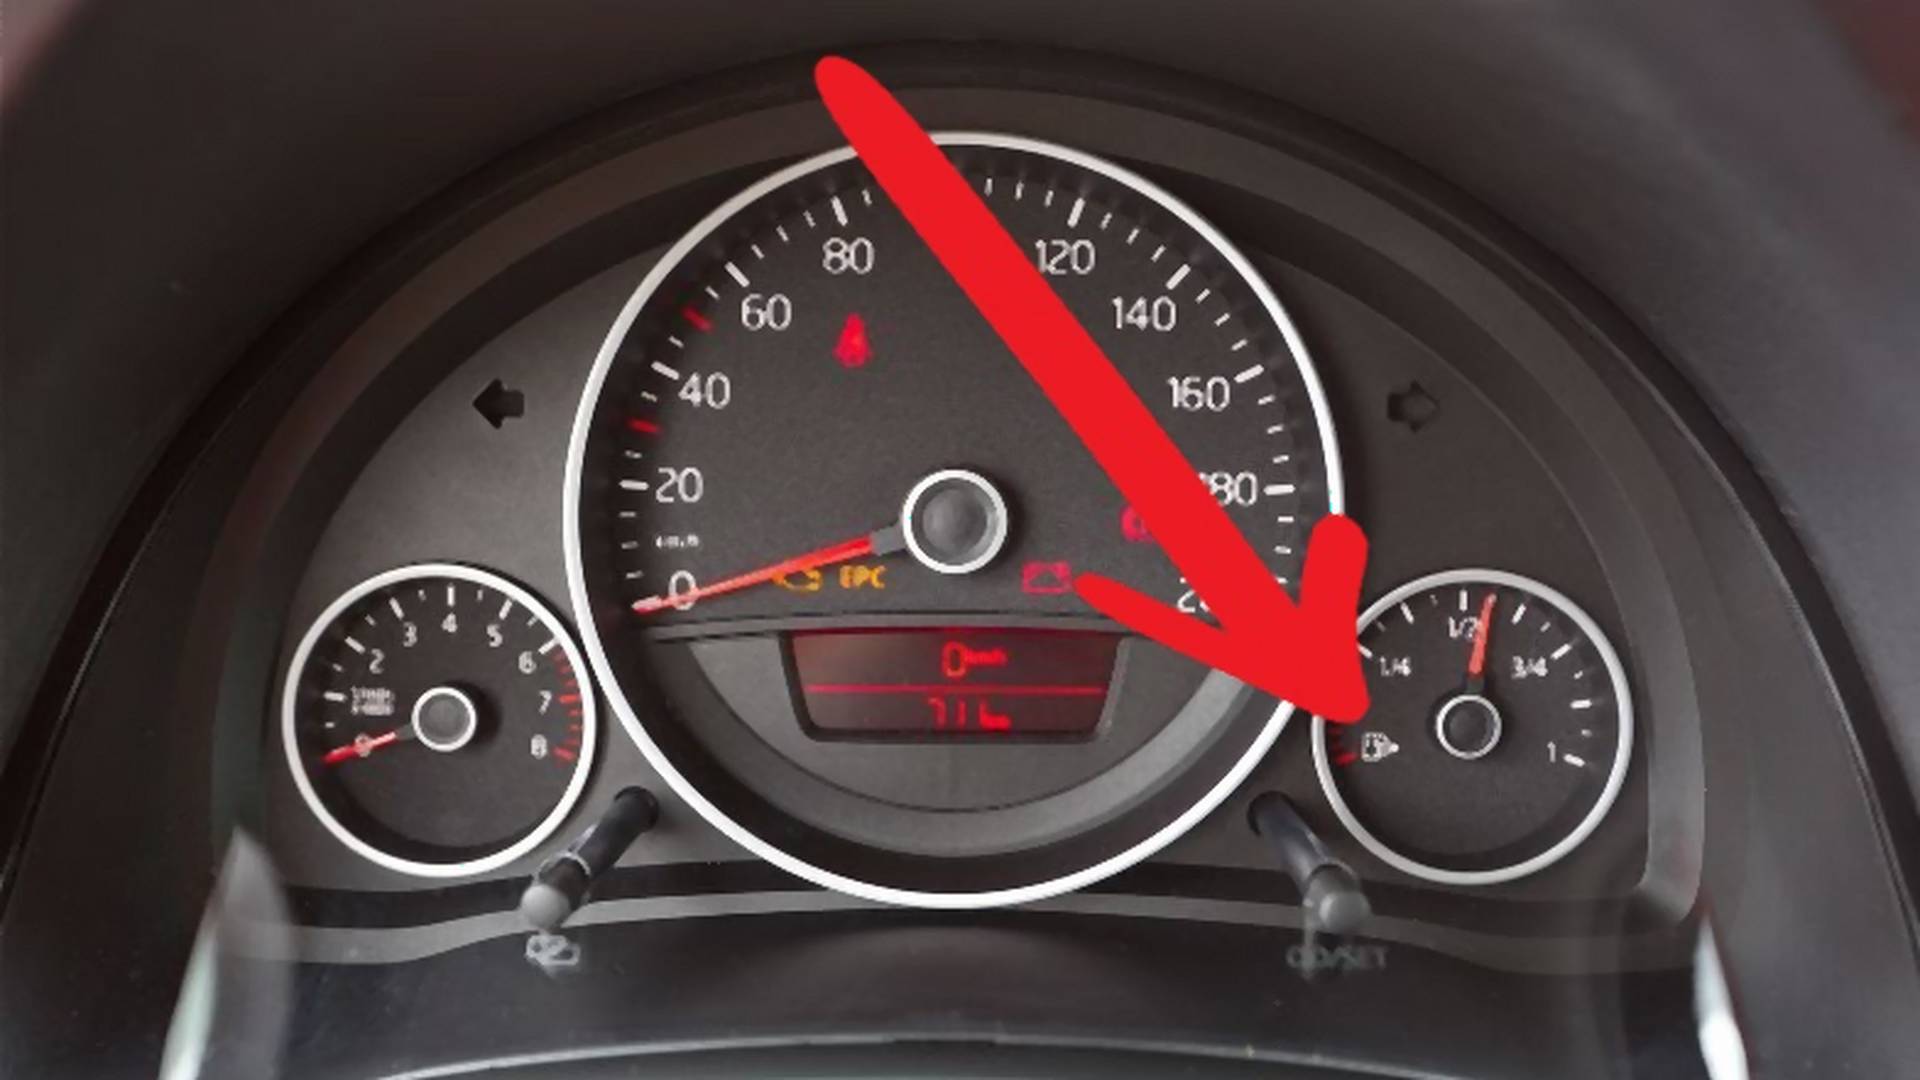 Ważna informacja dla młodych kierowców – czy wiesz, po co jest strzałka przy wskaźniku paliwa?